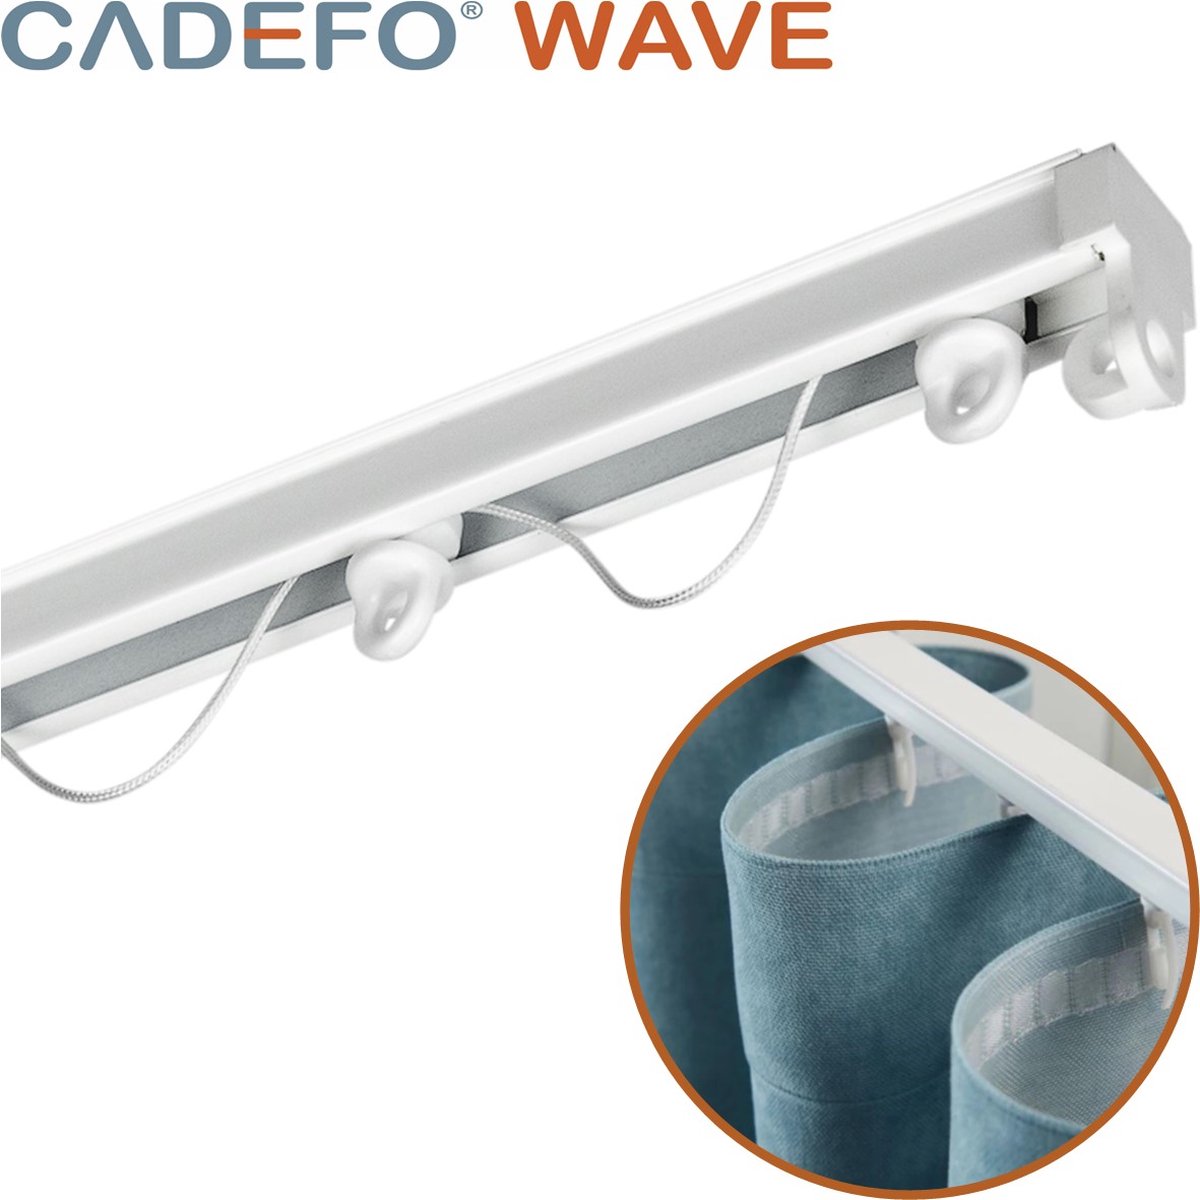 CADEFO WAVE (551 - 600 cm) Gordijnrails - Compleet op maat! - UIT 1 STUK - Leverbaar tot 6 meter - Plafondbevestiging - Lengte 555 cm